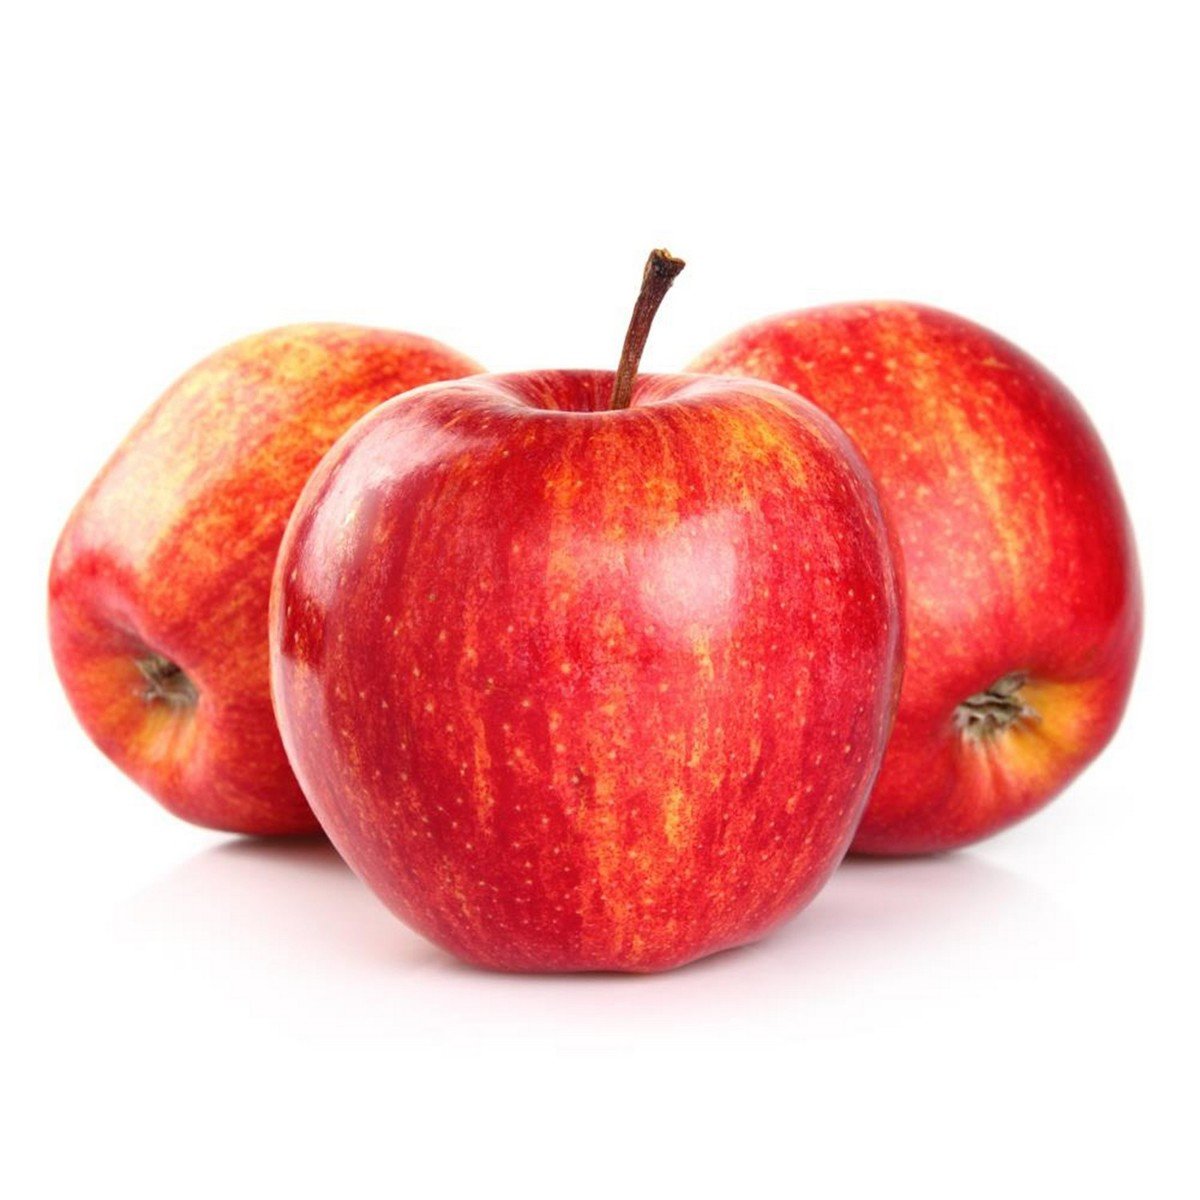 Buy Apple Royal Gala USA 1 kg Online at Best Price | Apples | Lulu Kuwait in Saudi Arabia